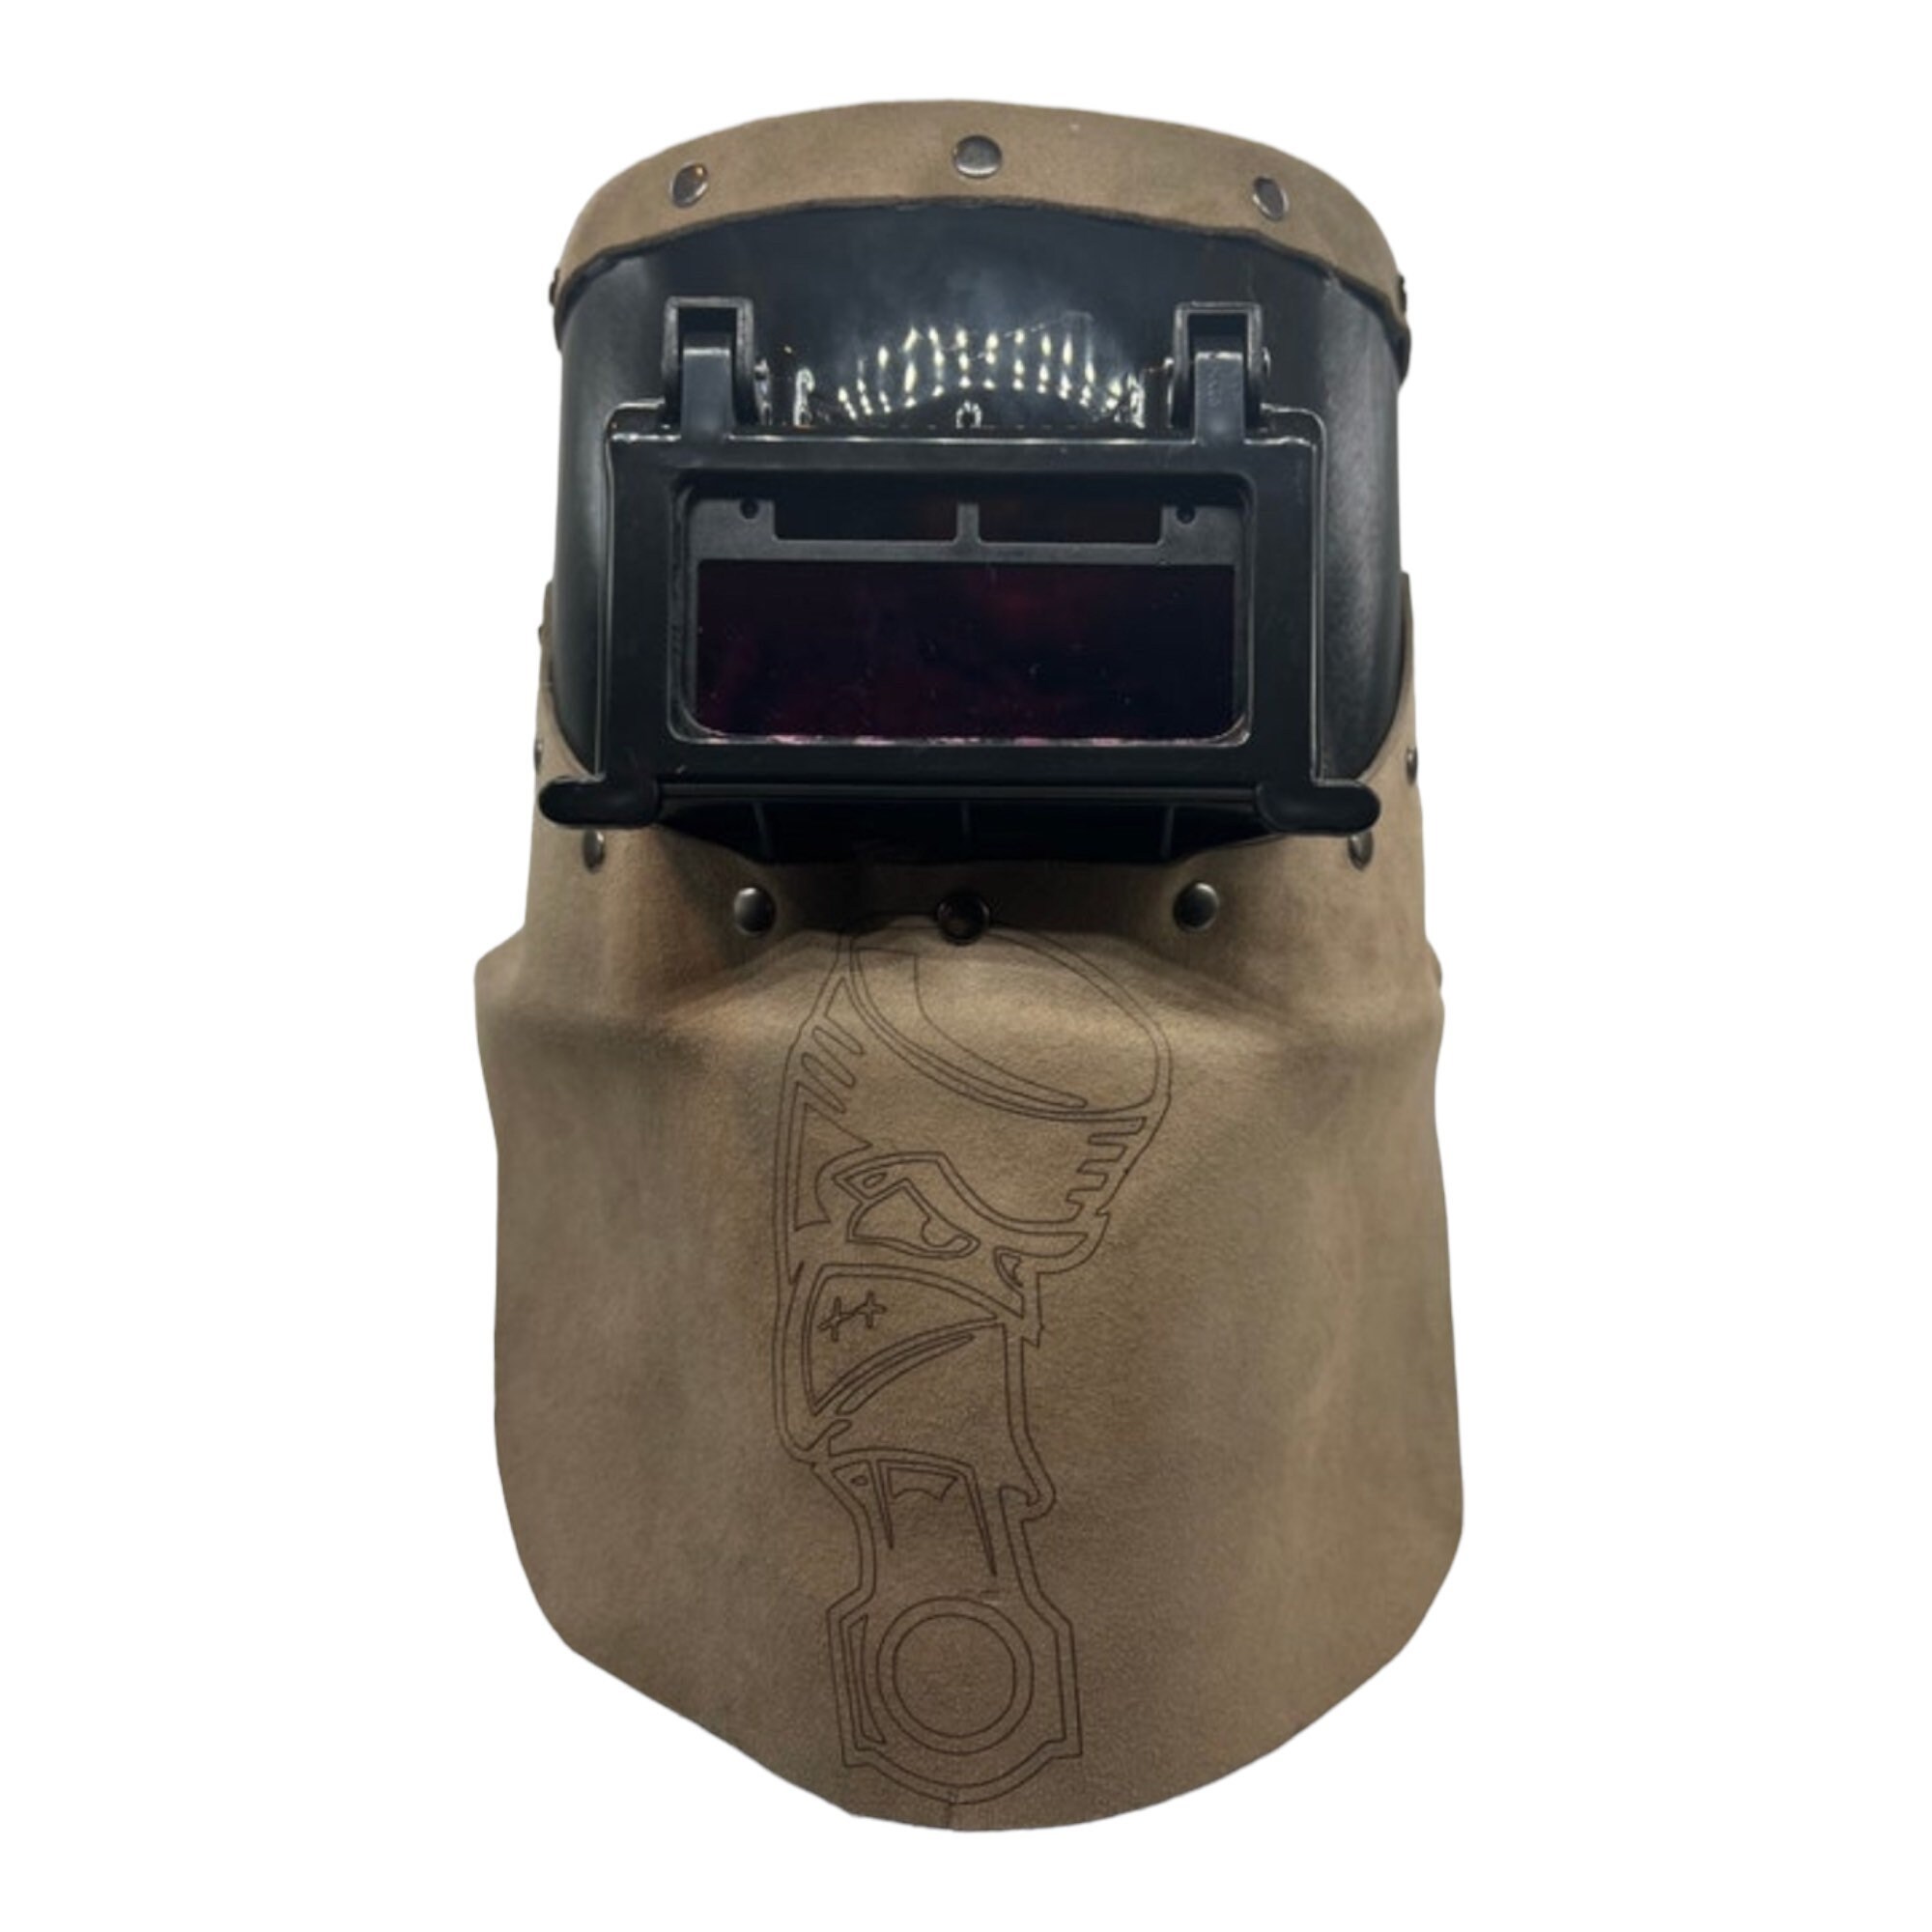 From purse to welding hood #welder #weldingstore #weldinghood #soldado, welding